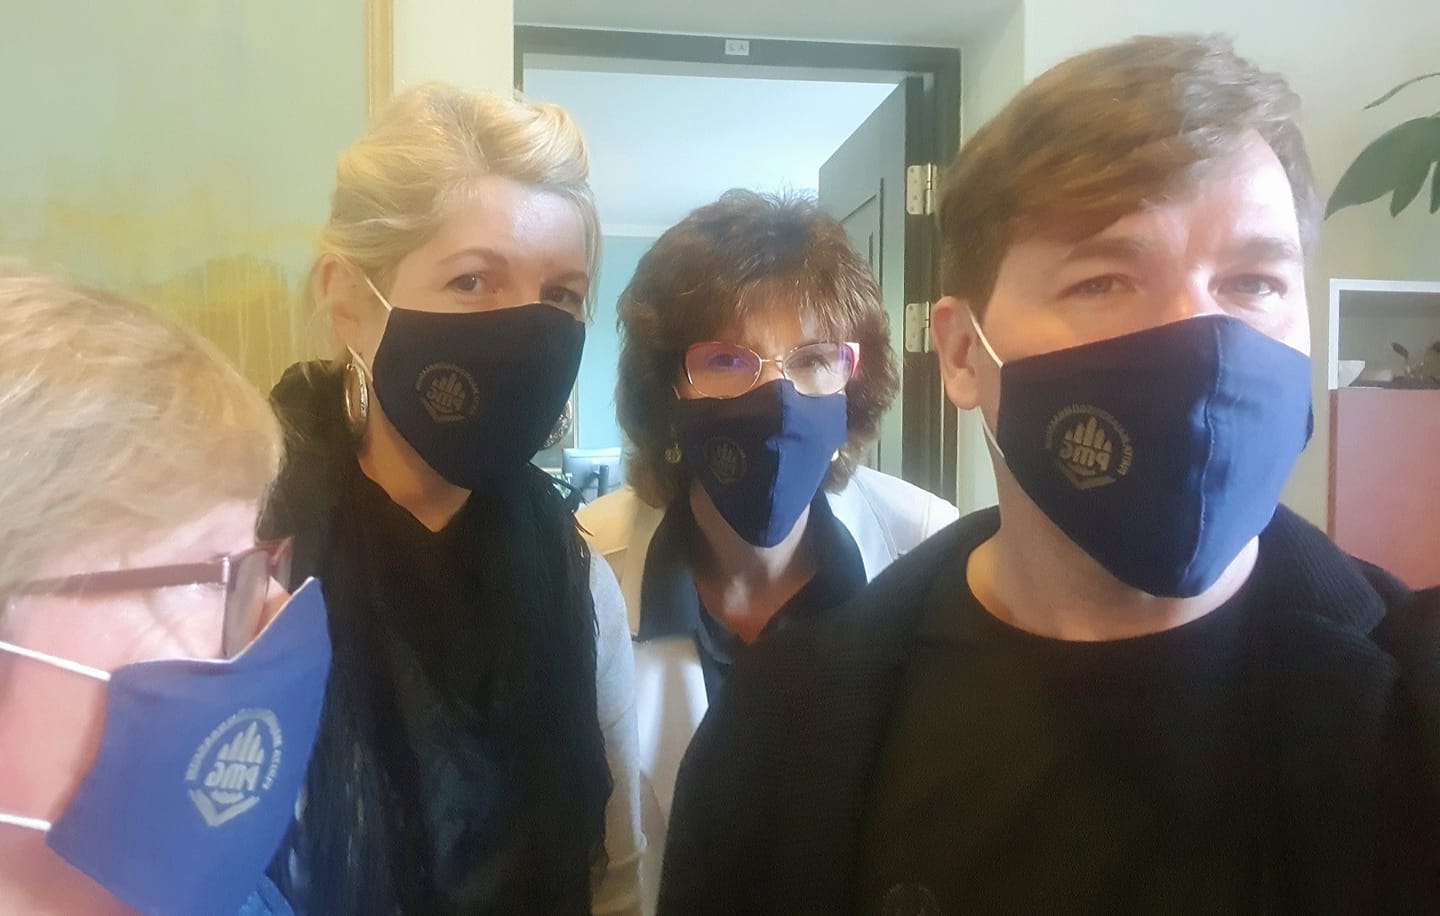 Kutsume õpetajaid, õpilasi, koolitöötajaid ja vanemaid, kellel esinevad võimalikud haigussümptomid, kandma avalikus kohas viibides maski